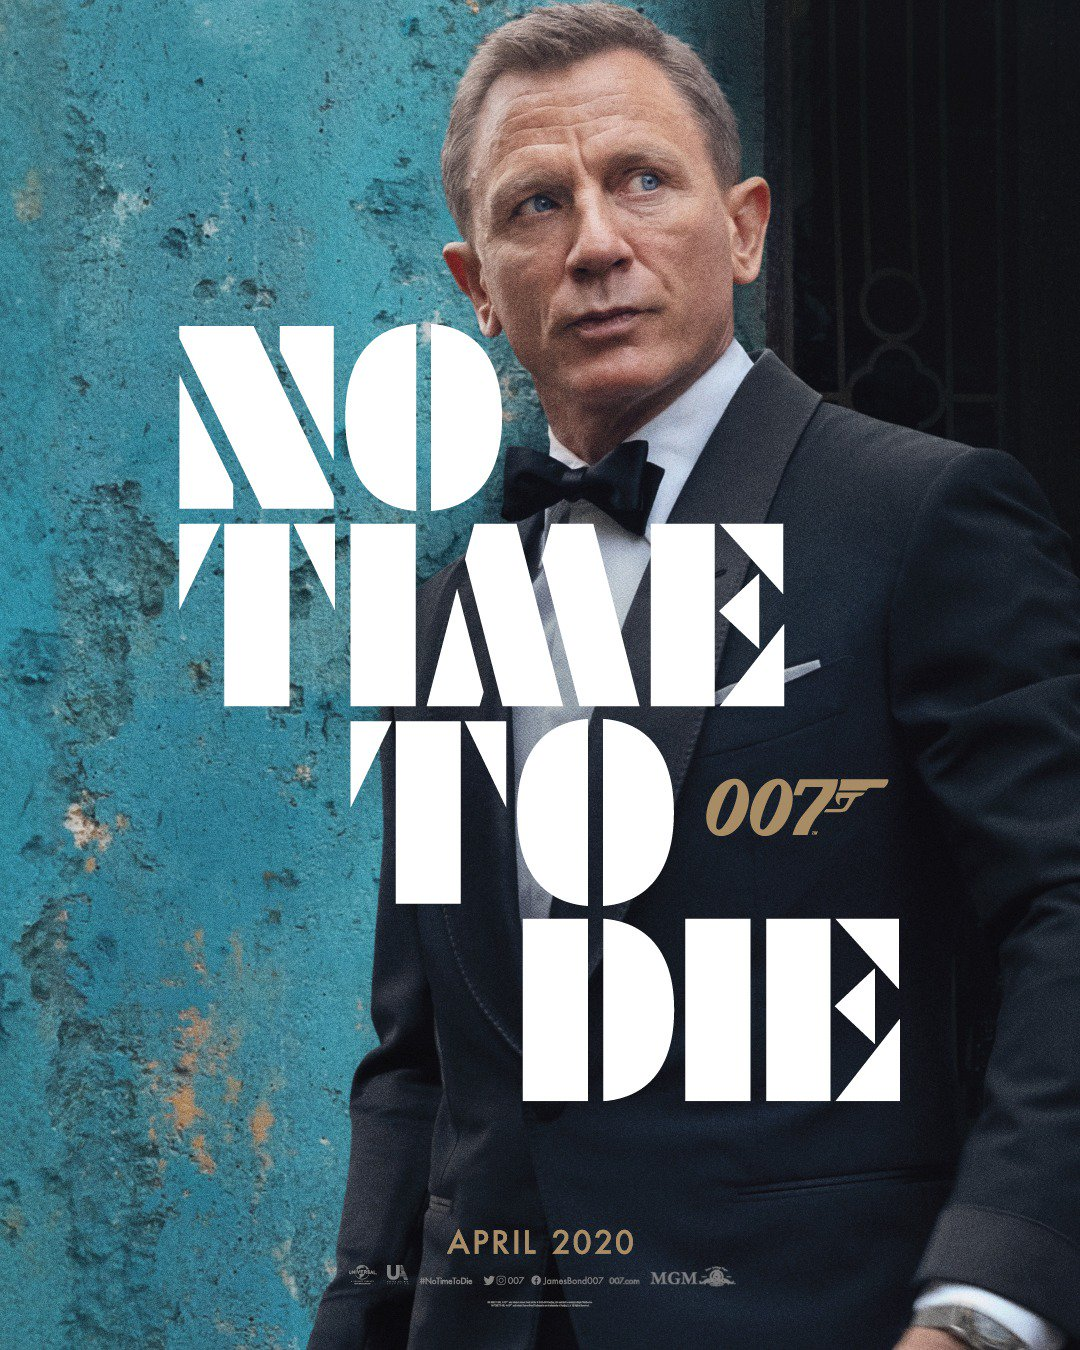 第25部 007 上映前 先出版一本精装本选集 邦德